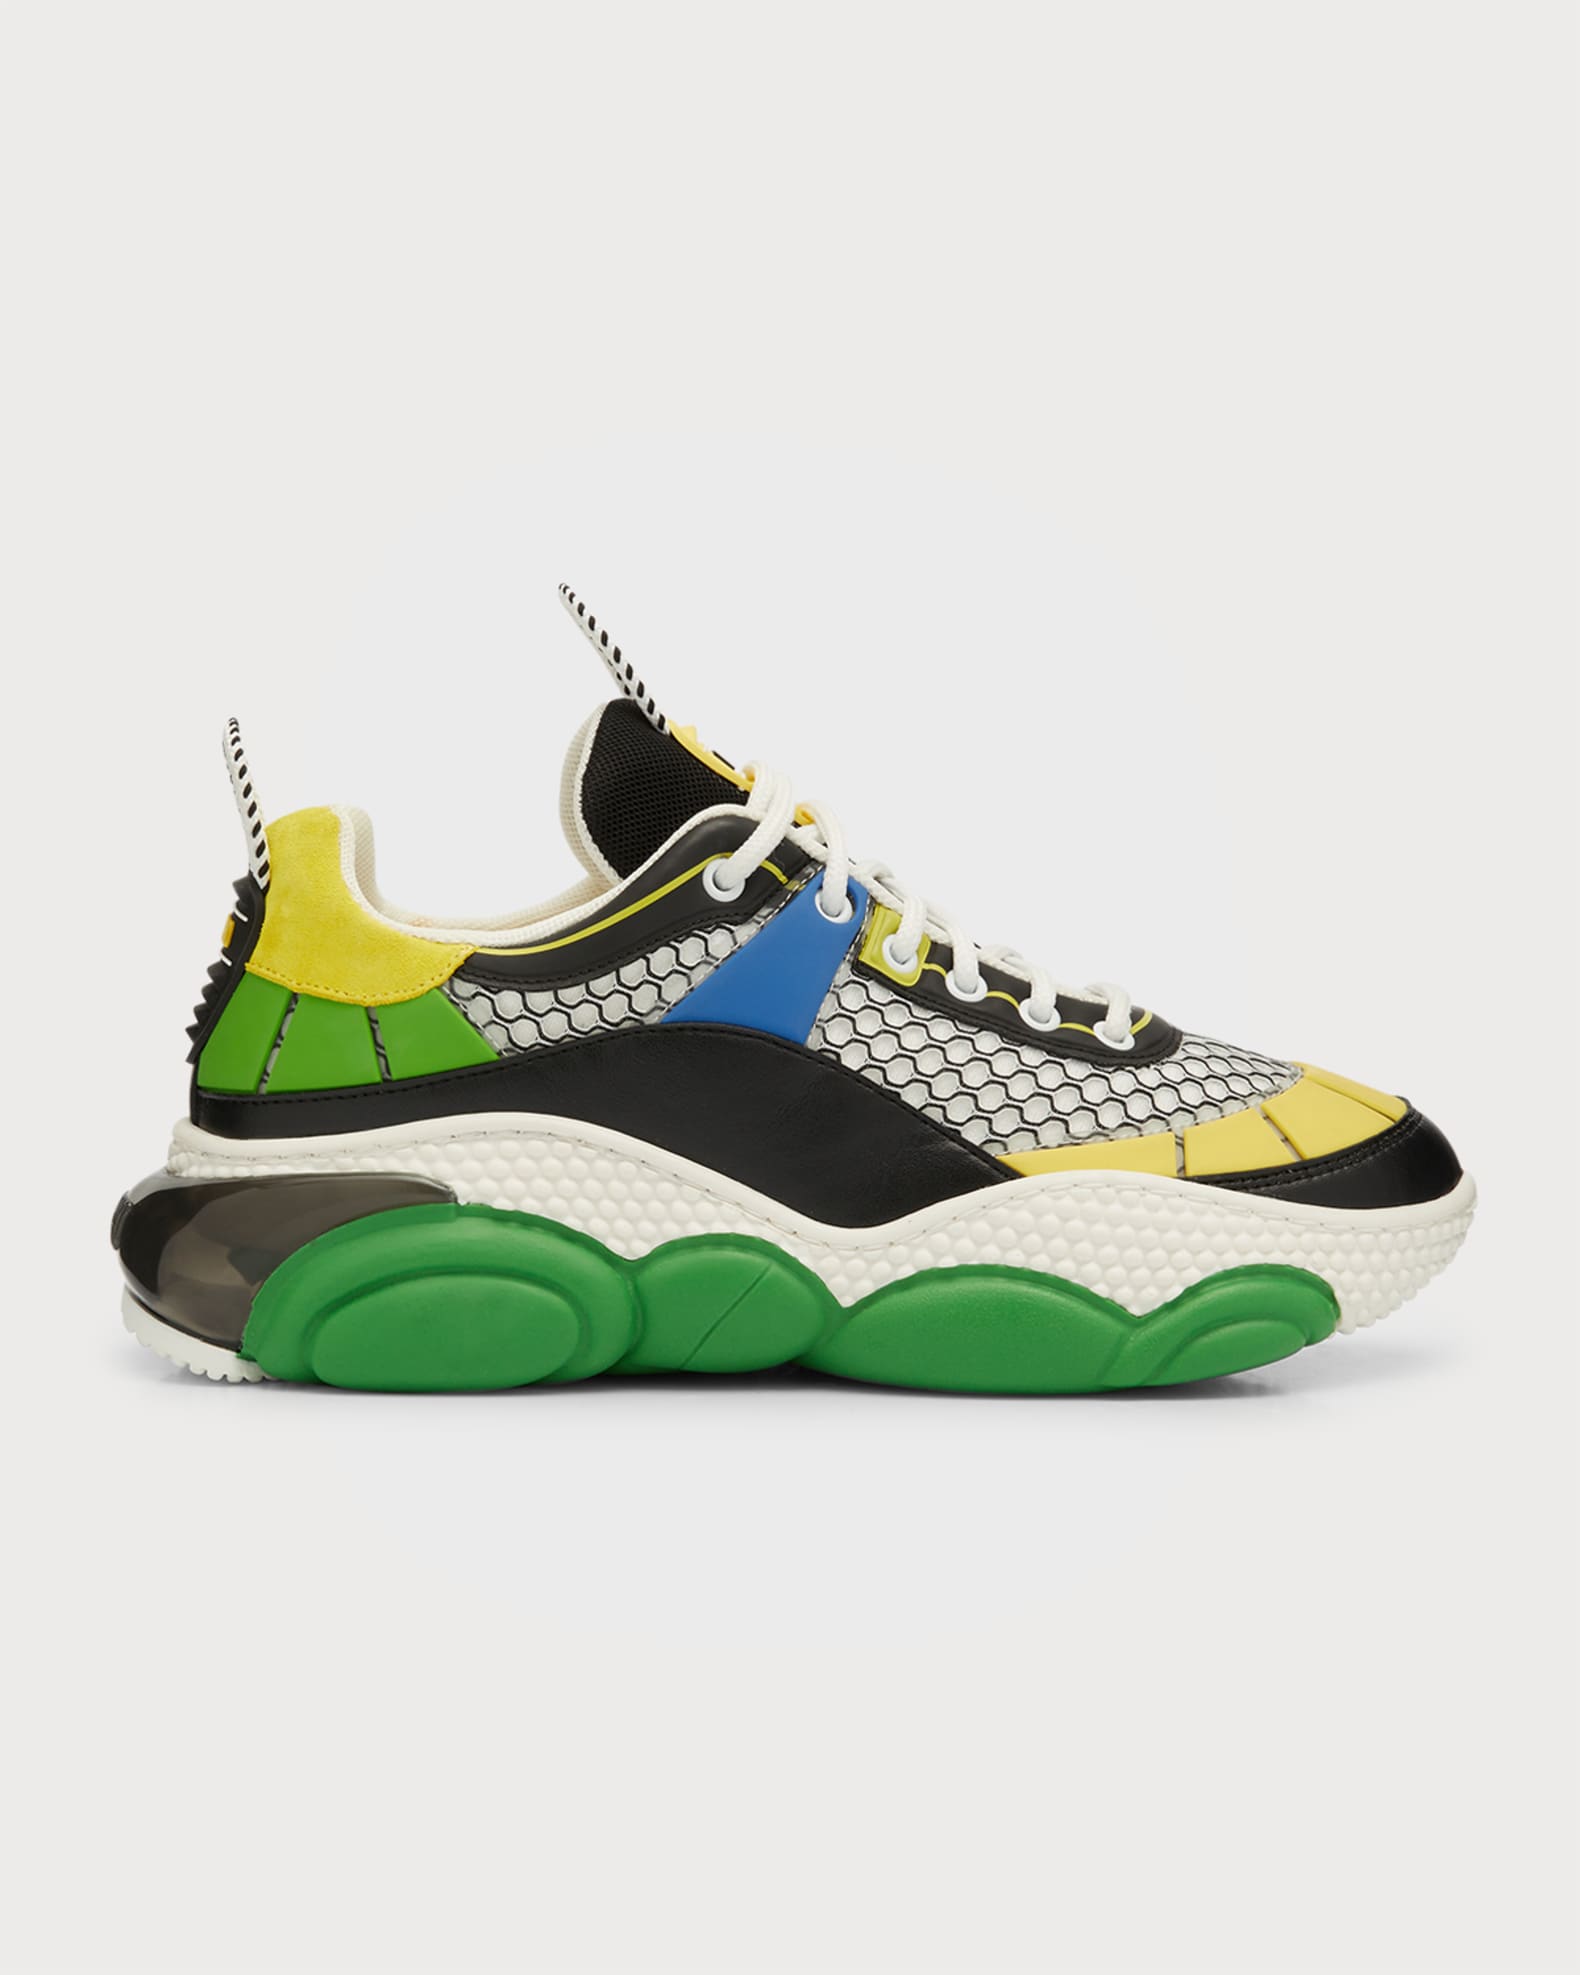 Moschino Men's Multicolor Bubble Teddy Mesh Fashion Sneakers | Neiman ...